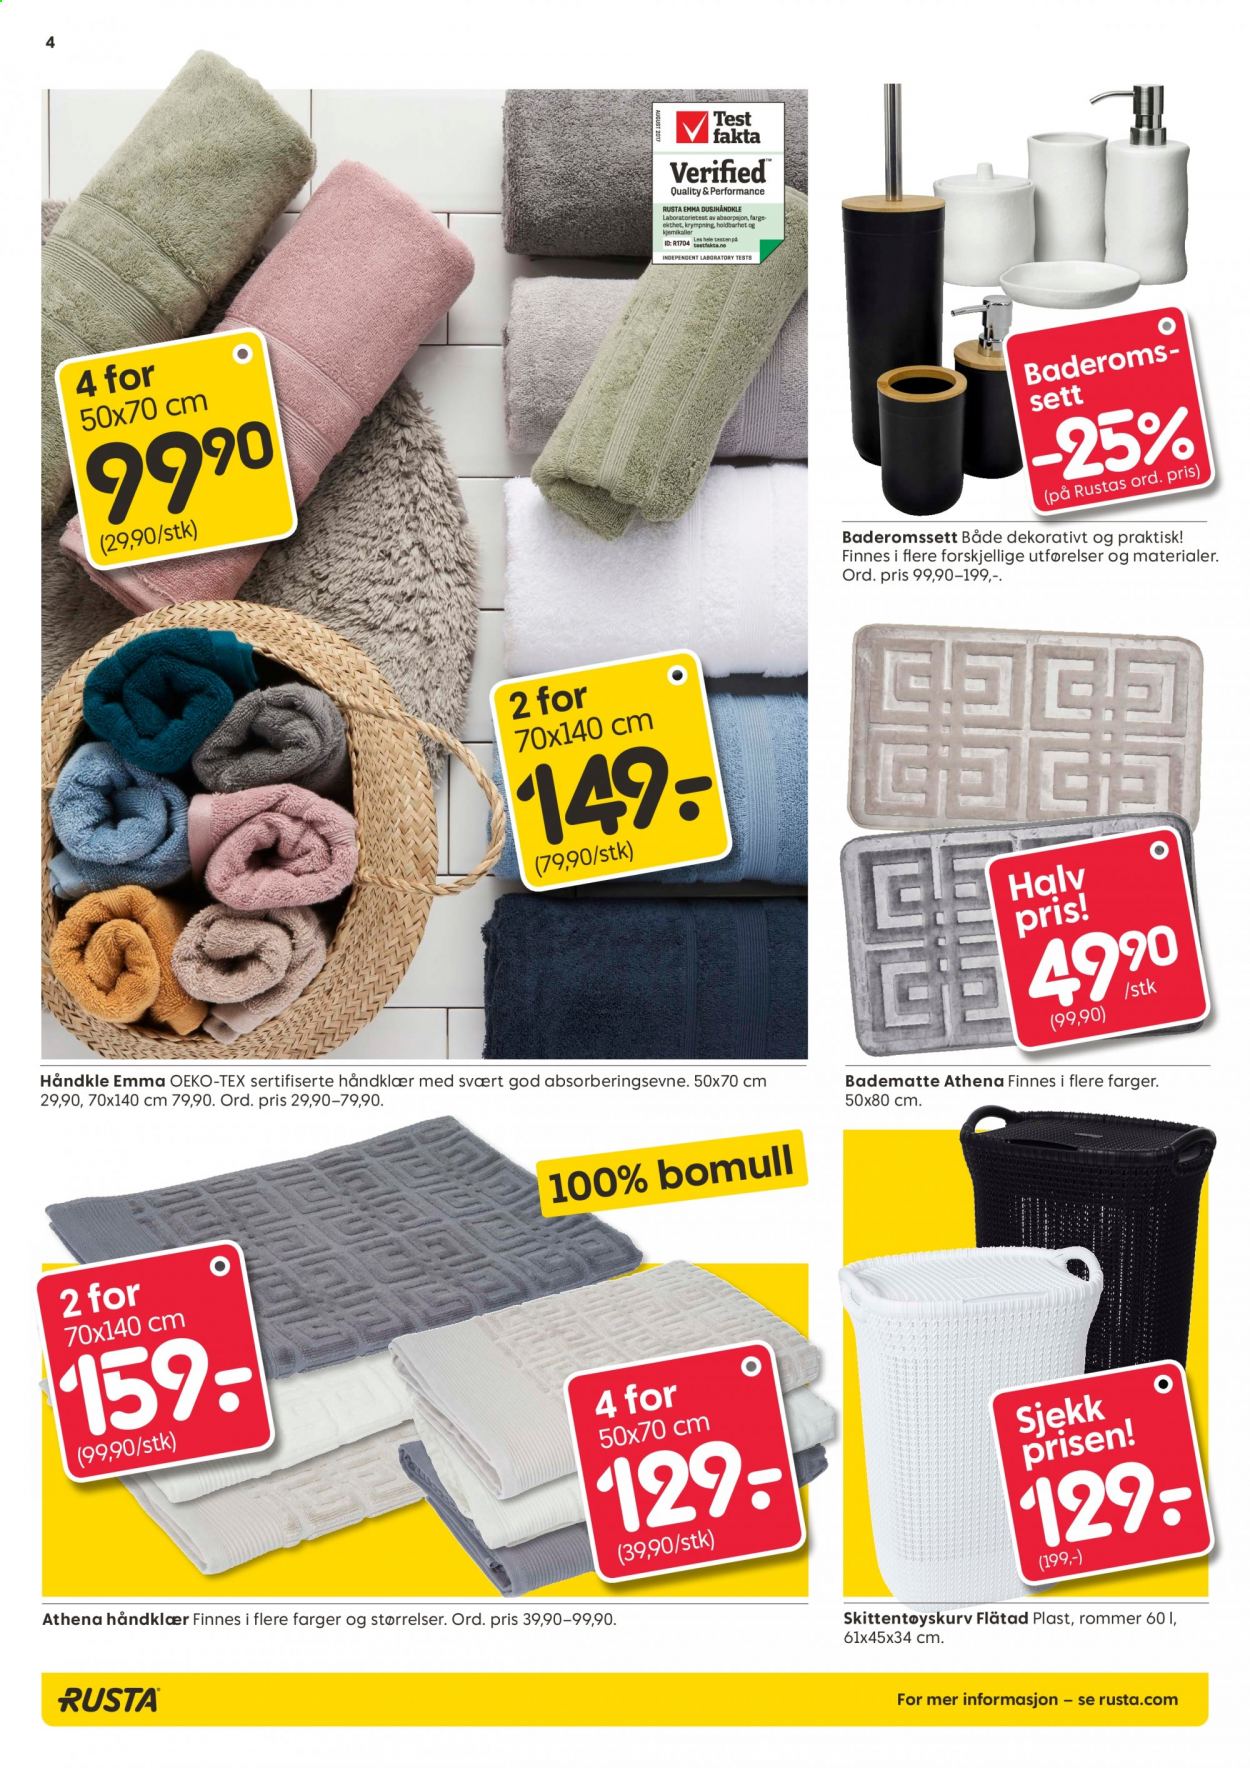 thumbnail - Kundeavis Rusta - 1.9.2021 - 7.9.2021 - Produkter fra tilbudsaviser - håndkle. Side 4.